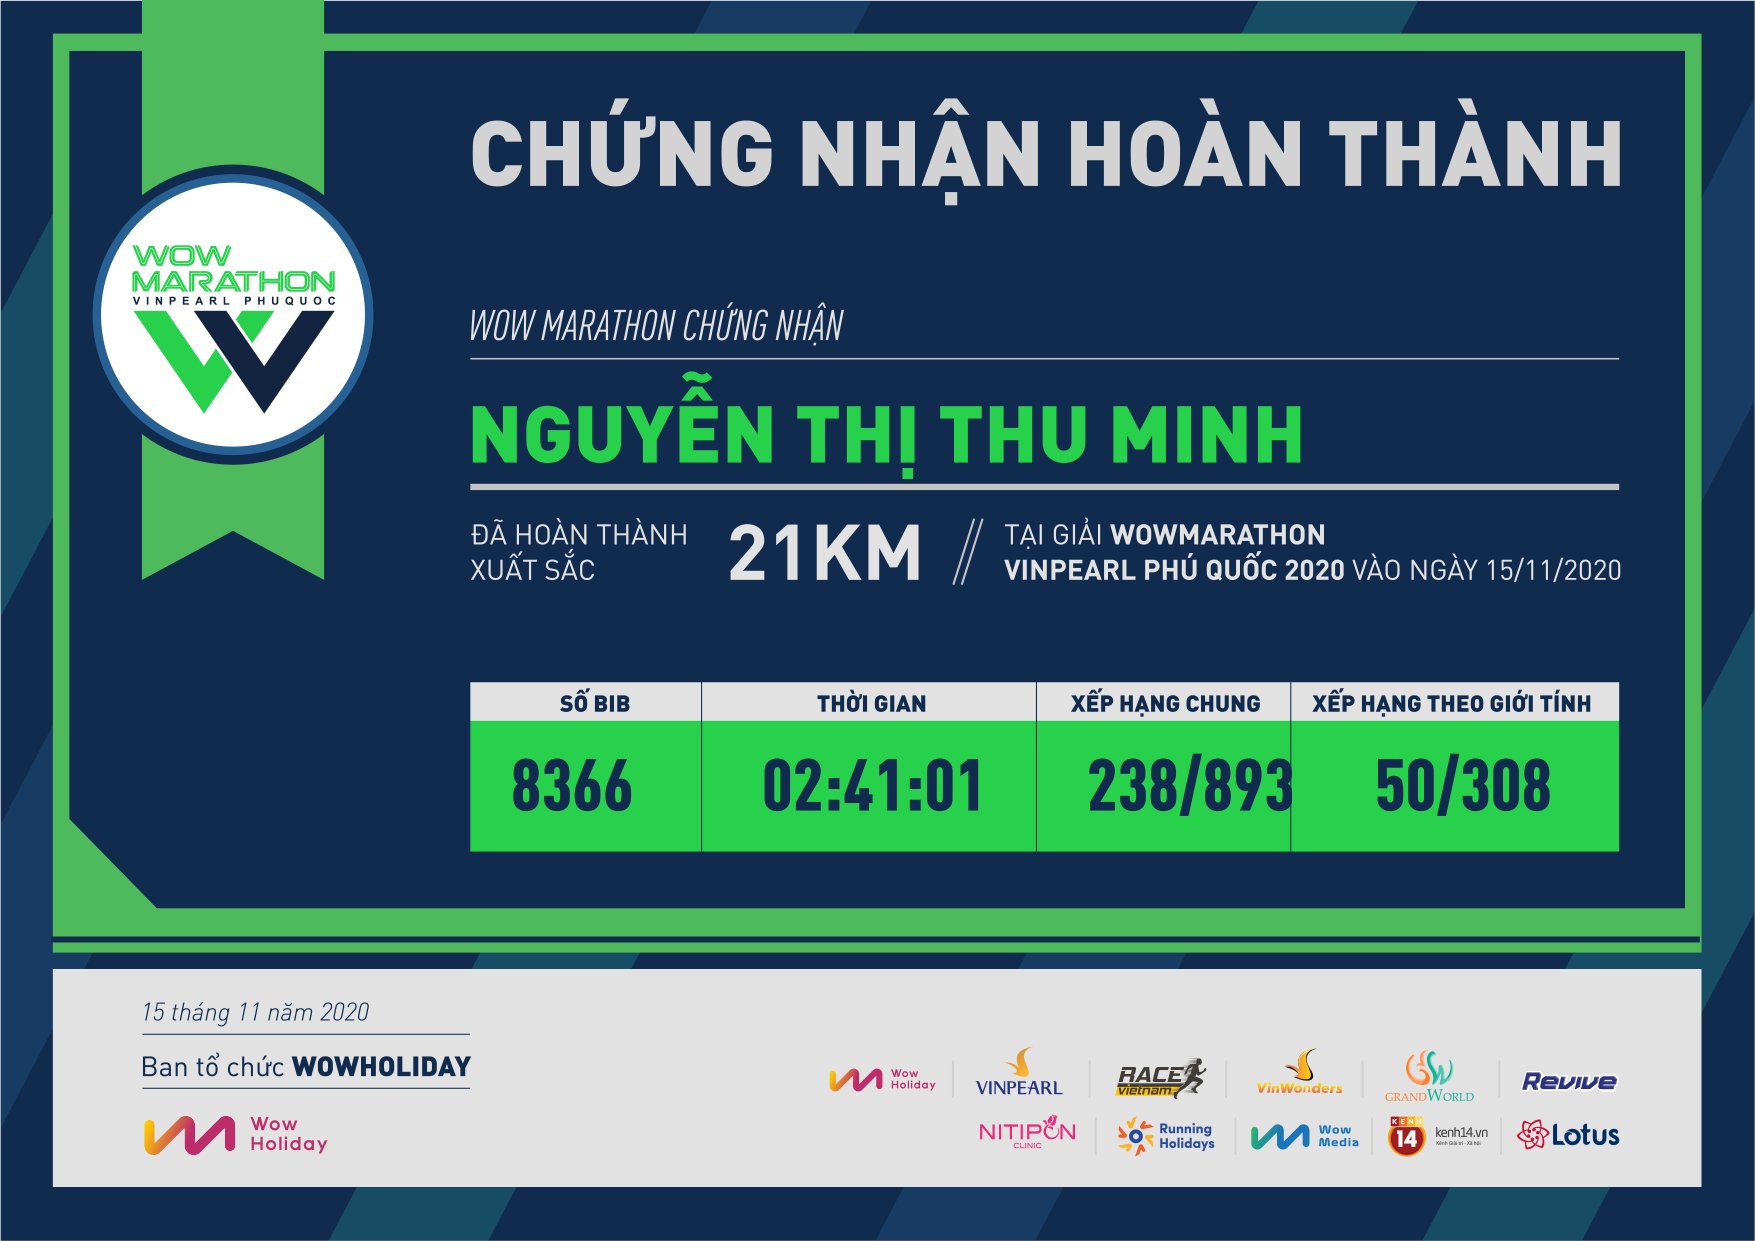 8366 - Nguyễn Thị Thu Minh